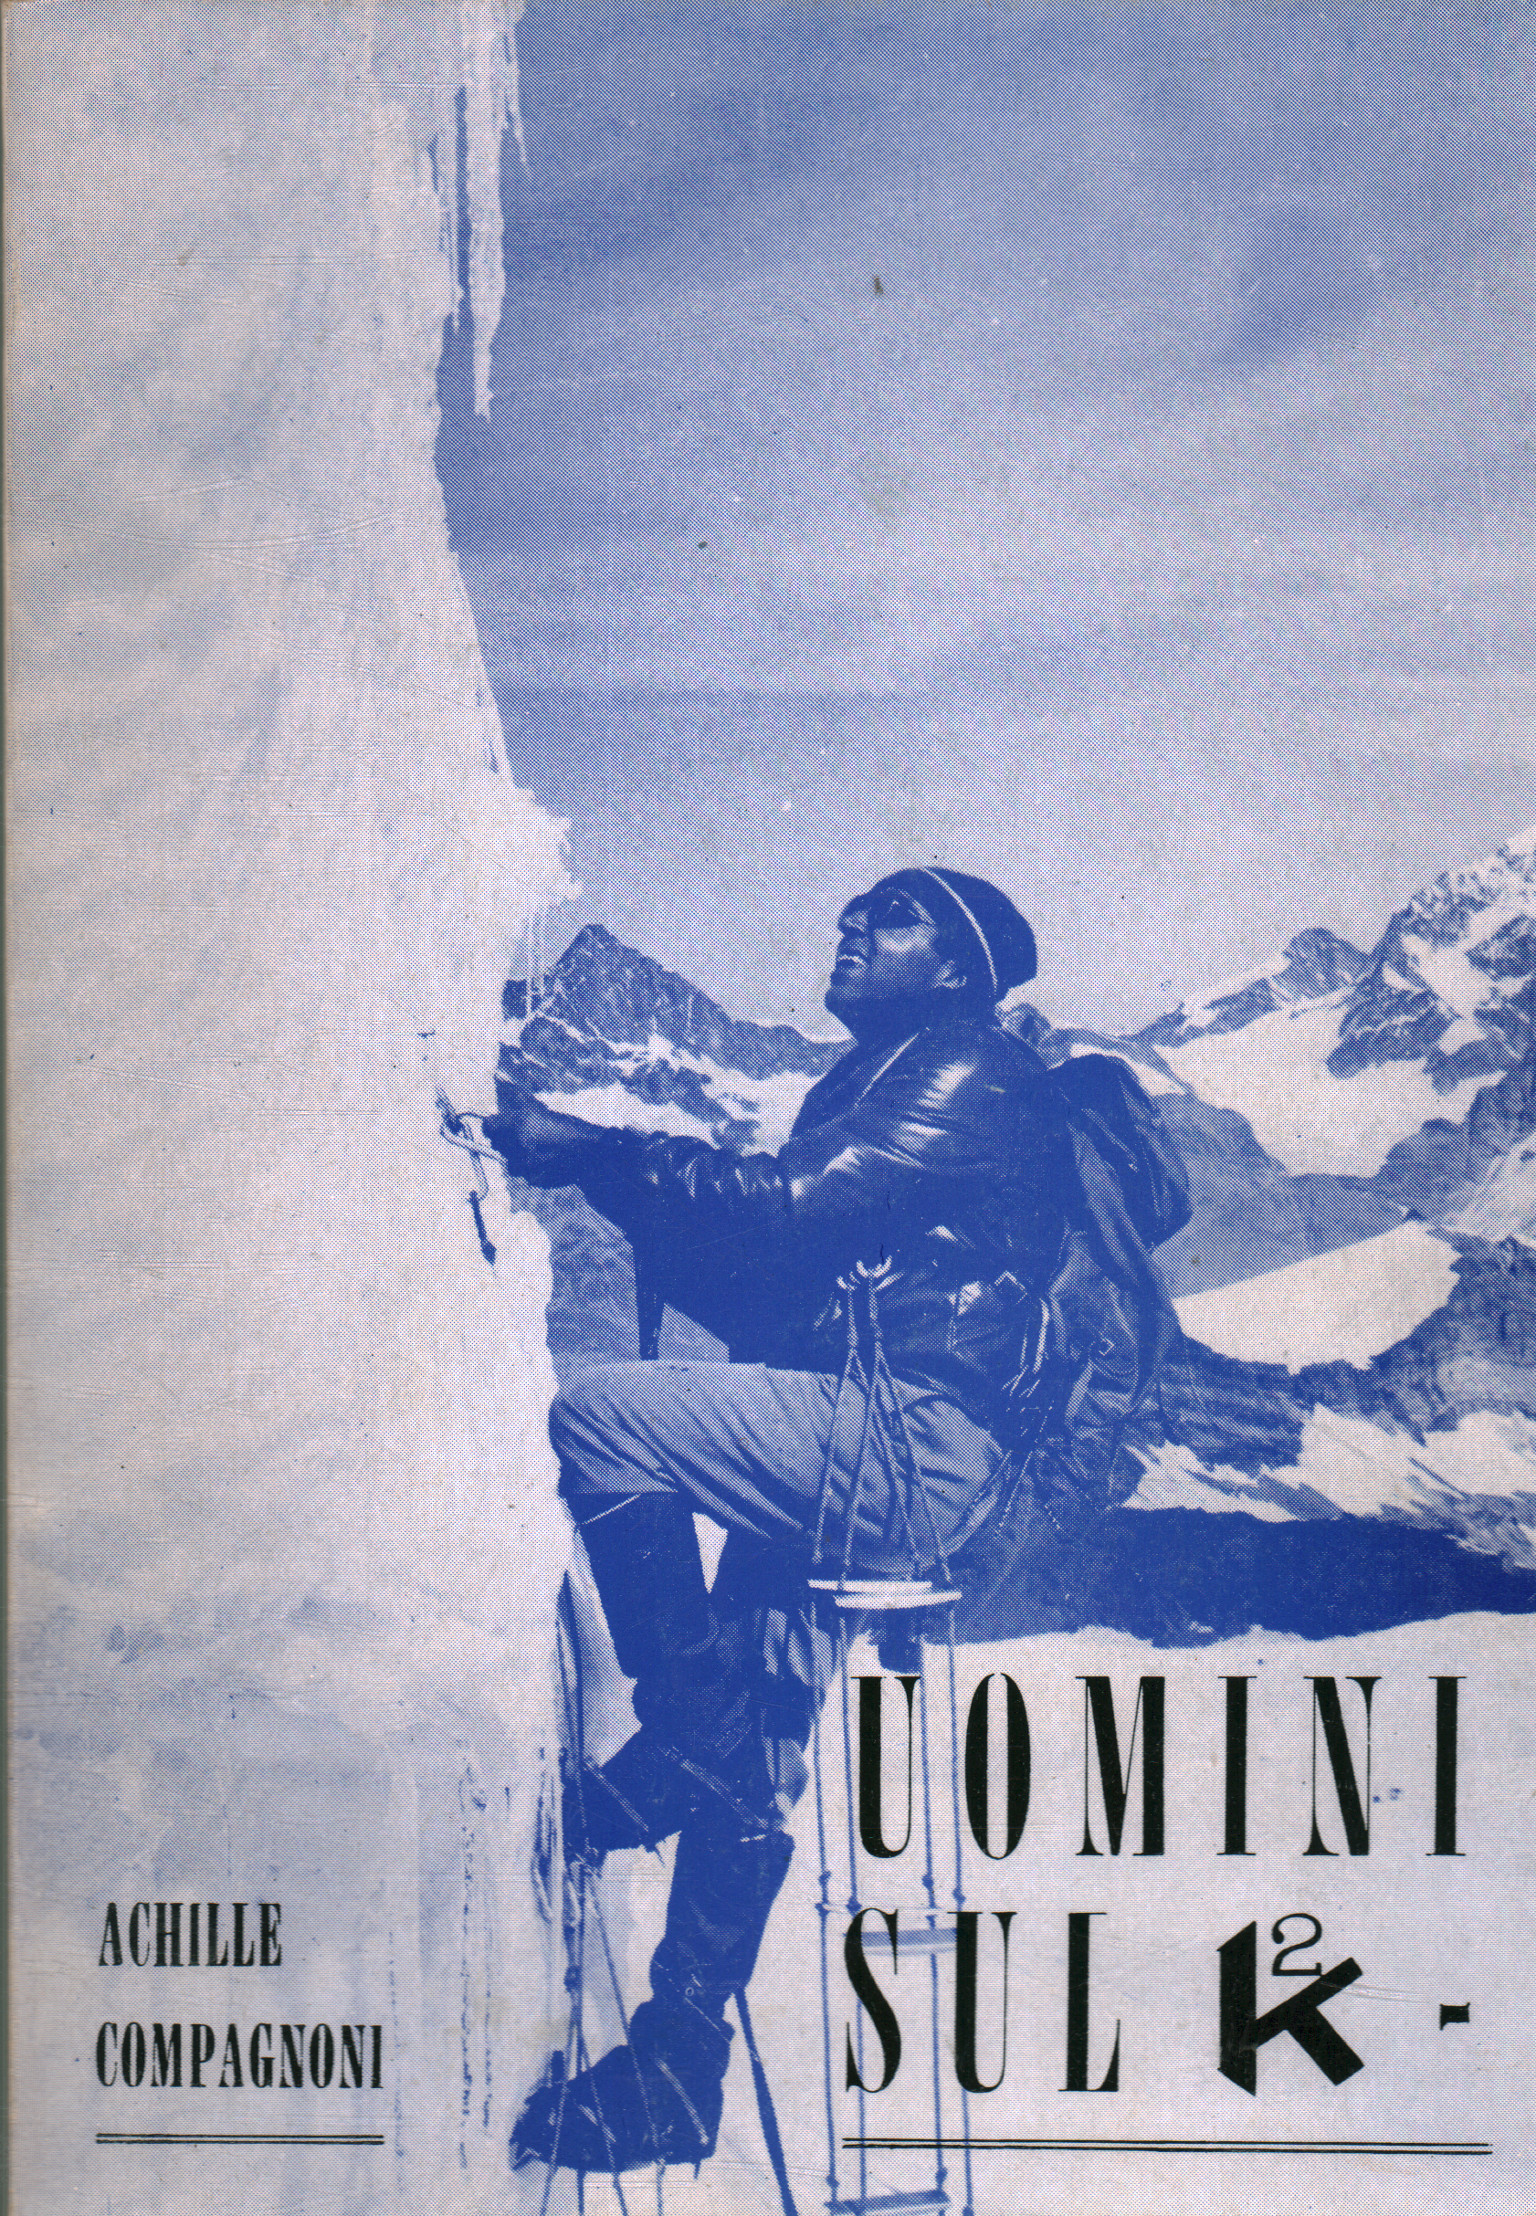 Männer auf K2, Achille Compagnoni